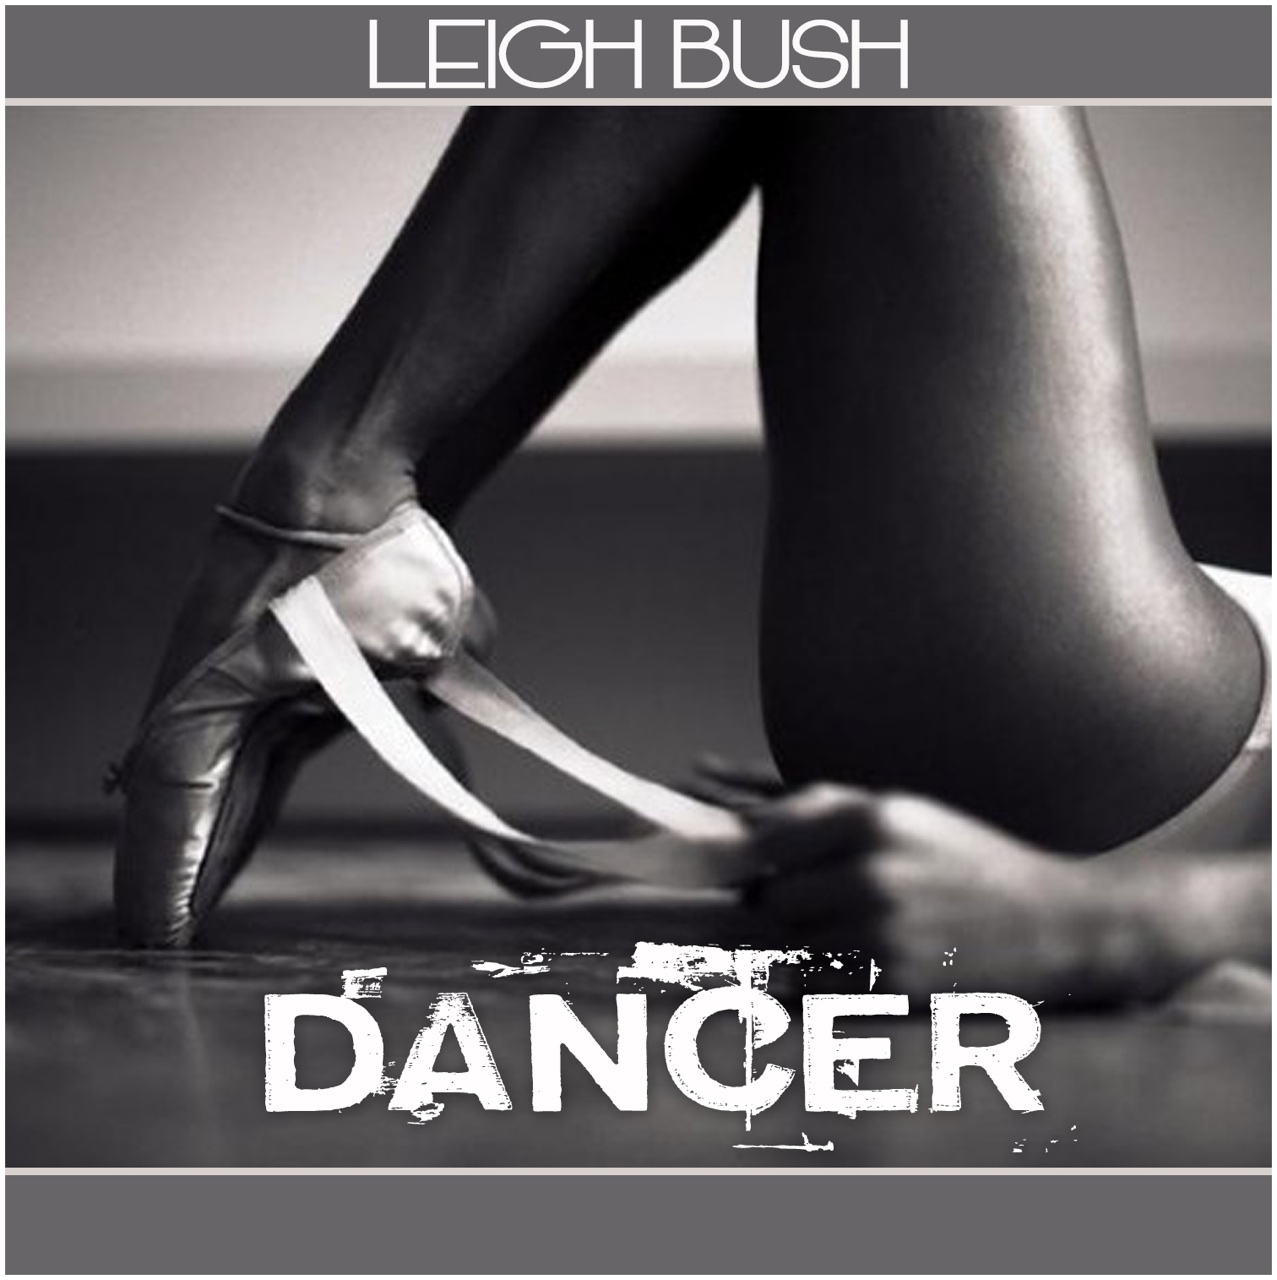 Leigh Bush "Dancer" (Video)